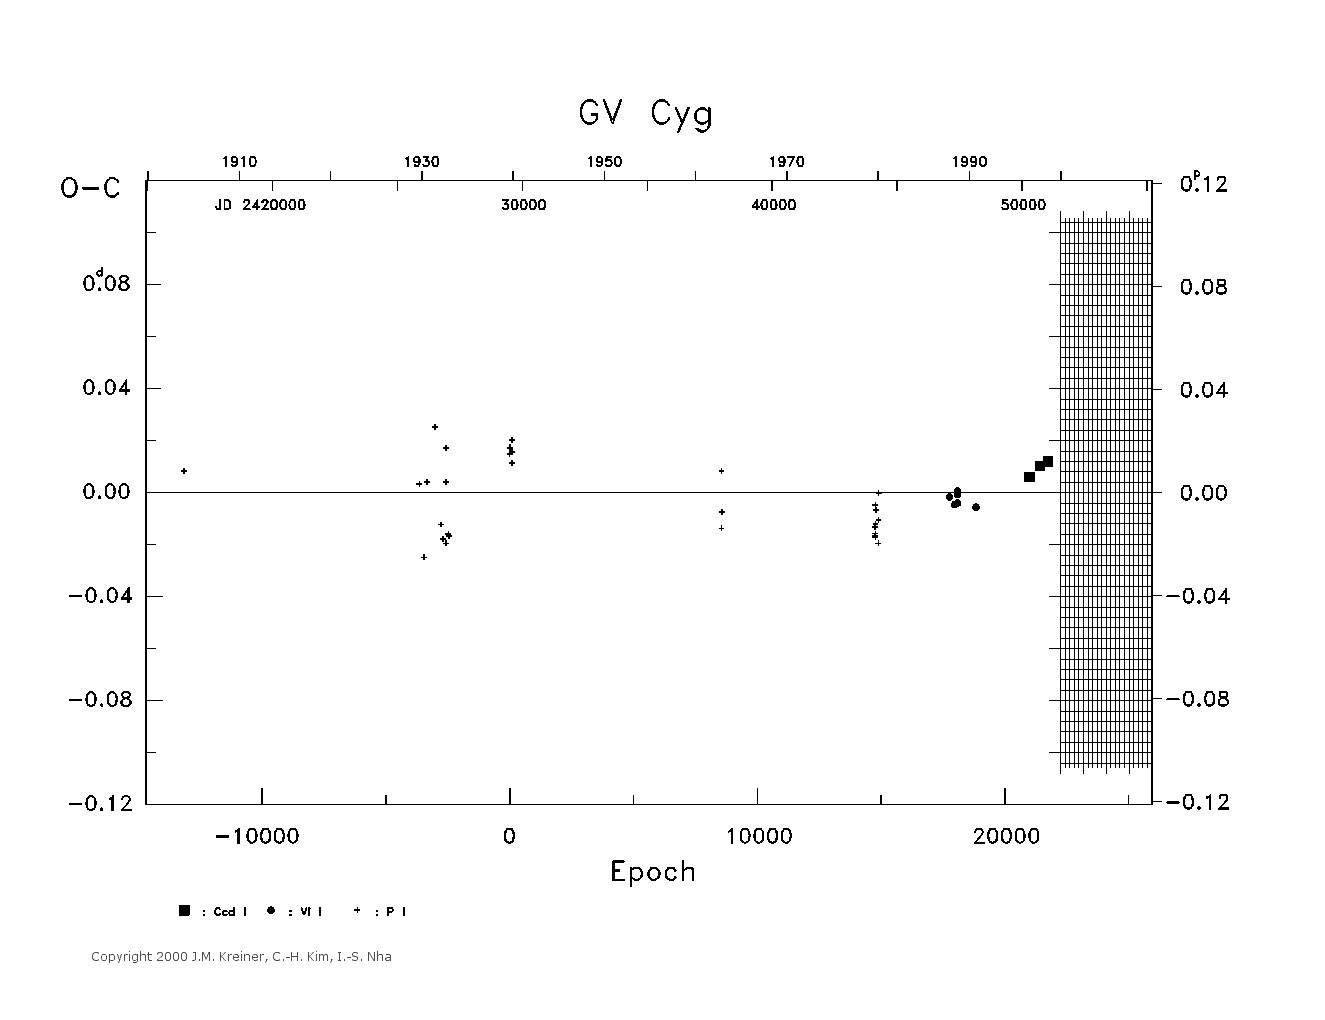 [IMAGE: large GV CYG O-C diagram]